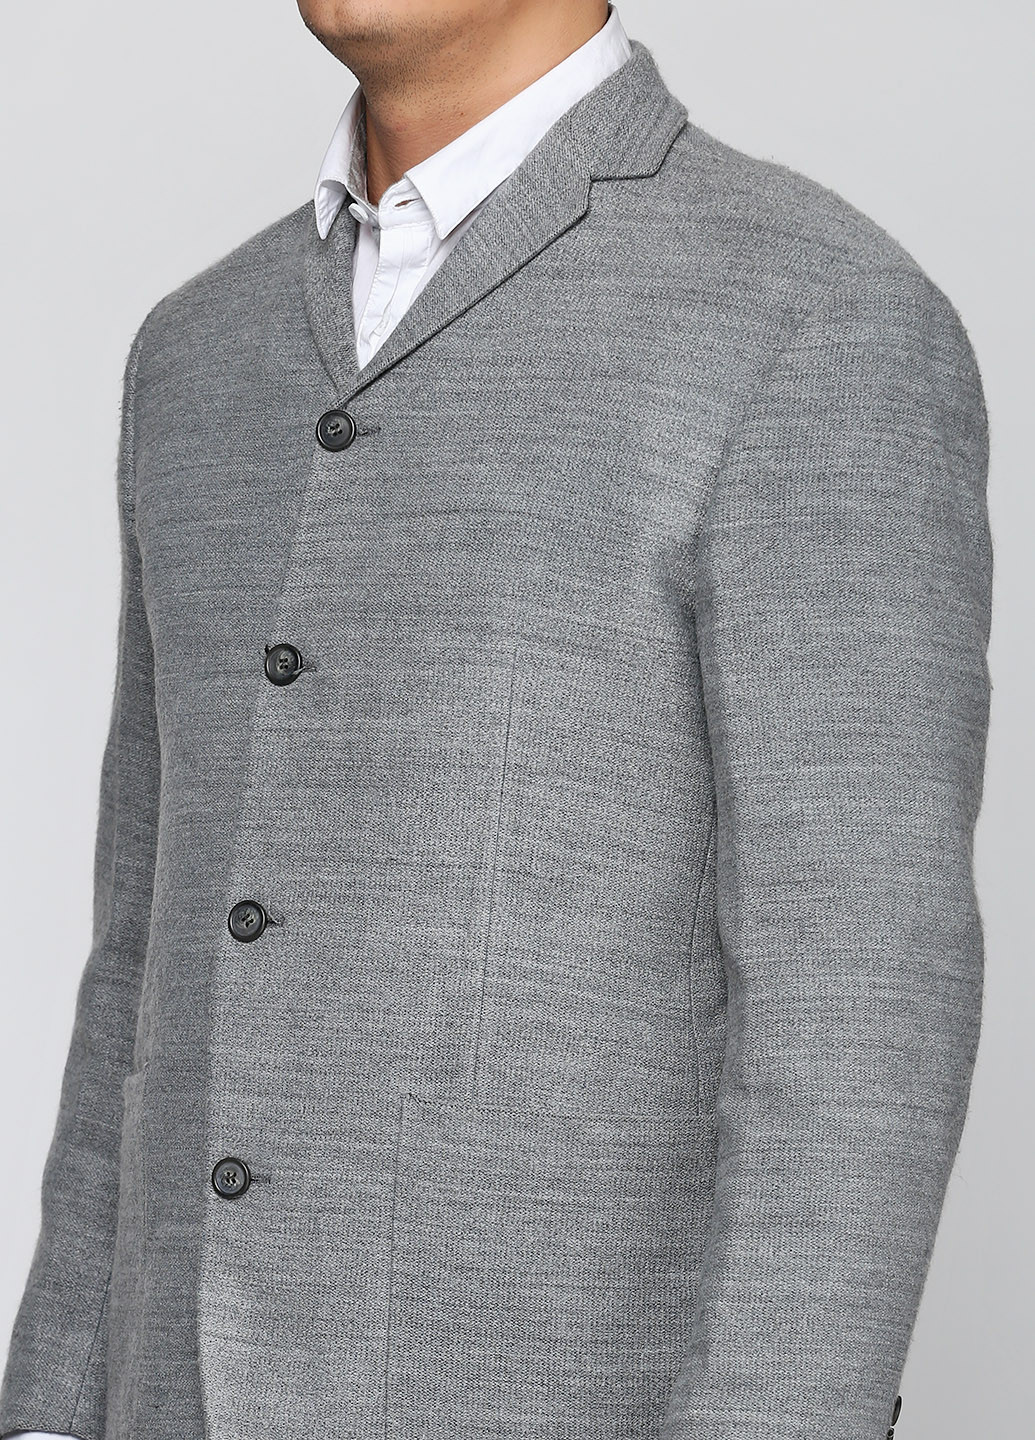 Пиджак Bocodo с длинным рукавом меланж серый деловой